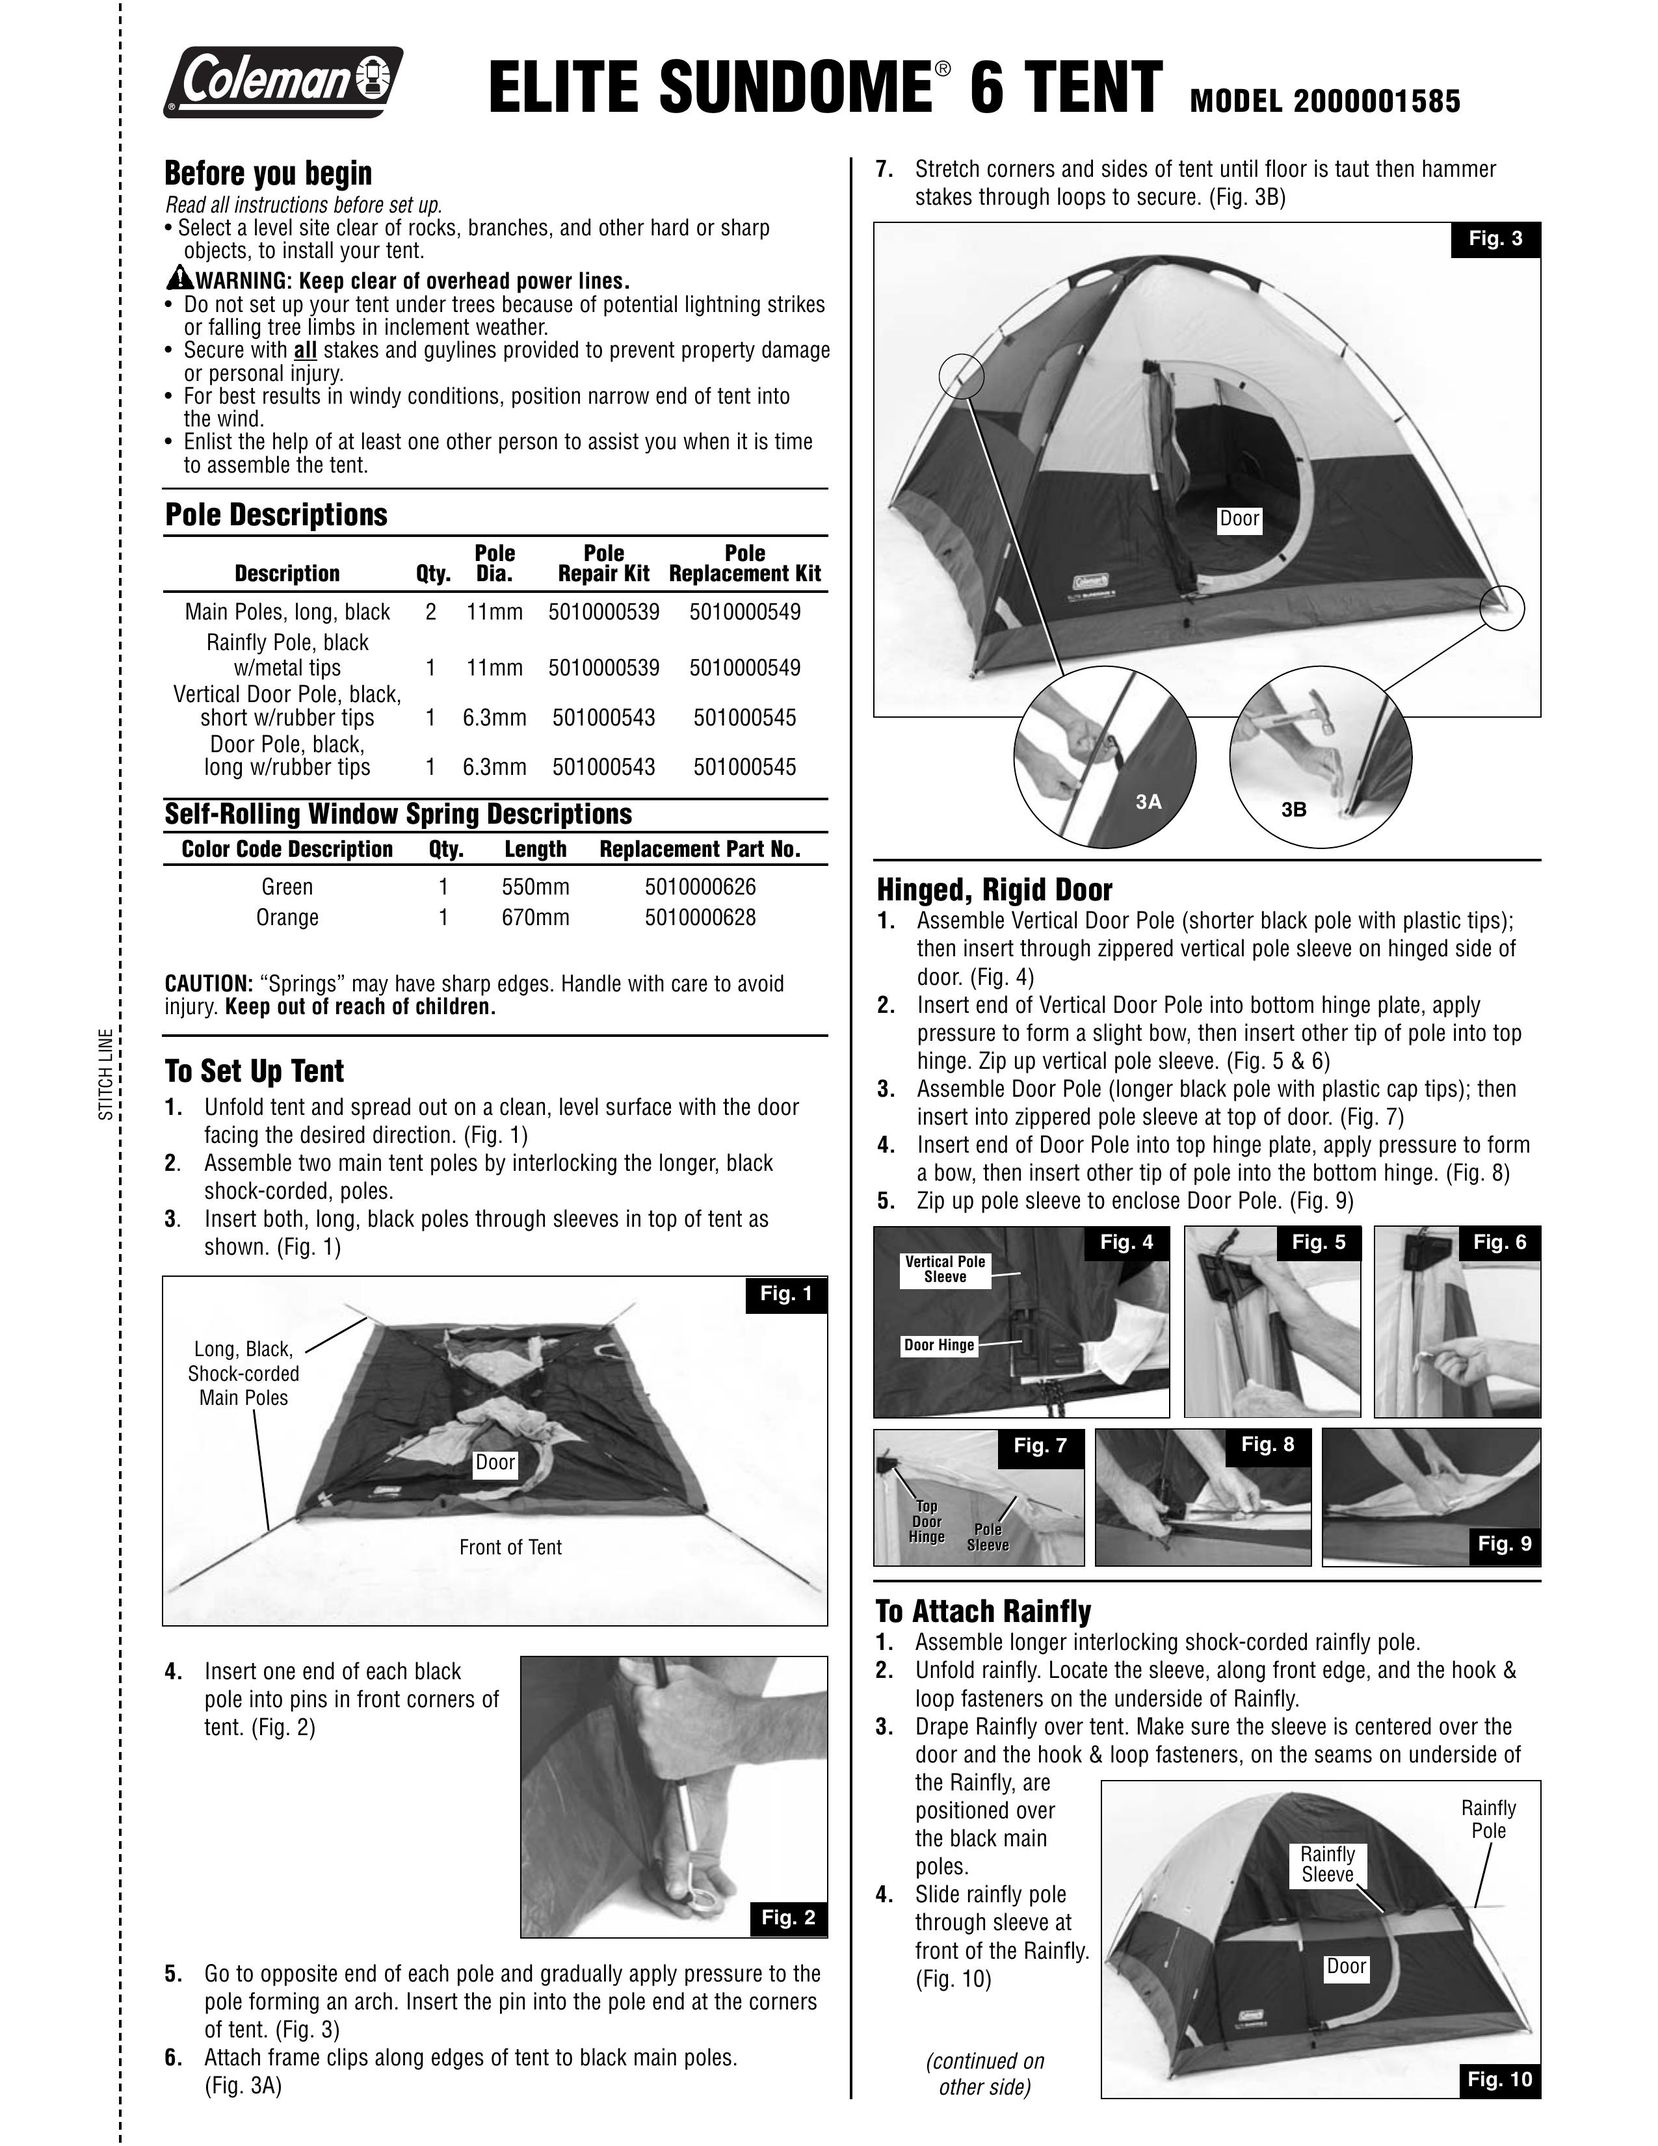 Coleman 2000001585 Tent User Manual